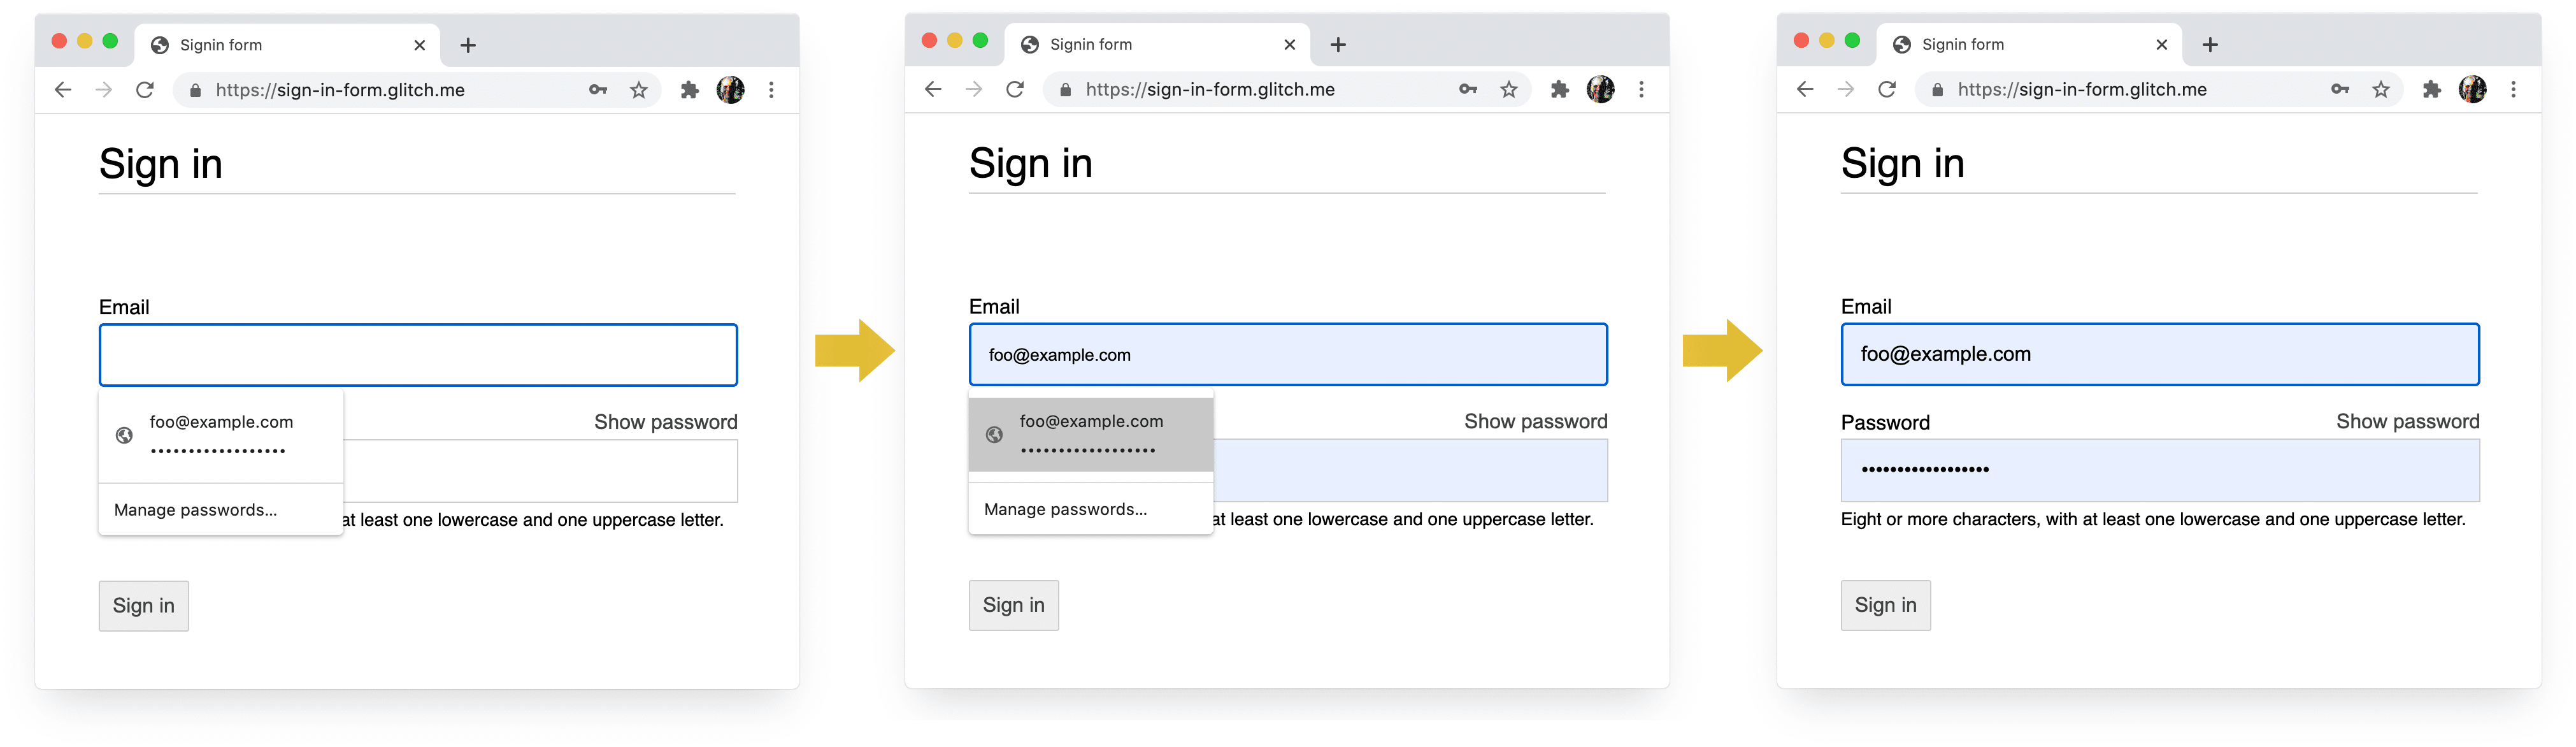 Screenshot di quattro fasi della procedura di accesso in Chrome su computer: completamento email, suggerimento email, gestore delle password, compilazione automatica alla selezione.